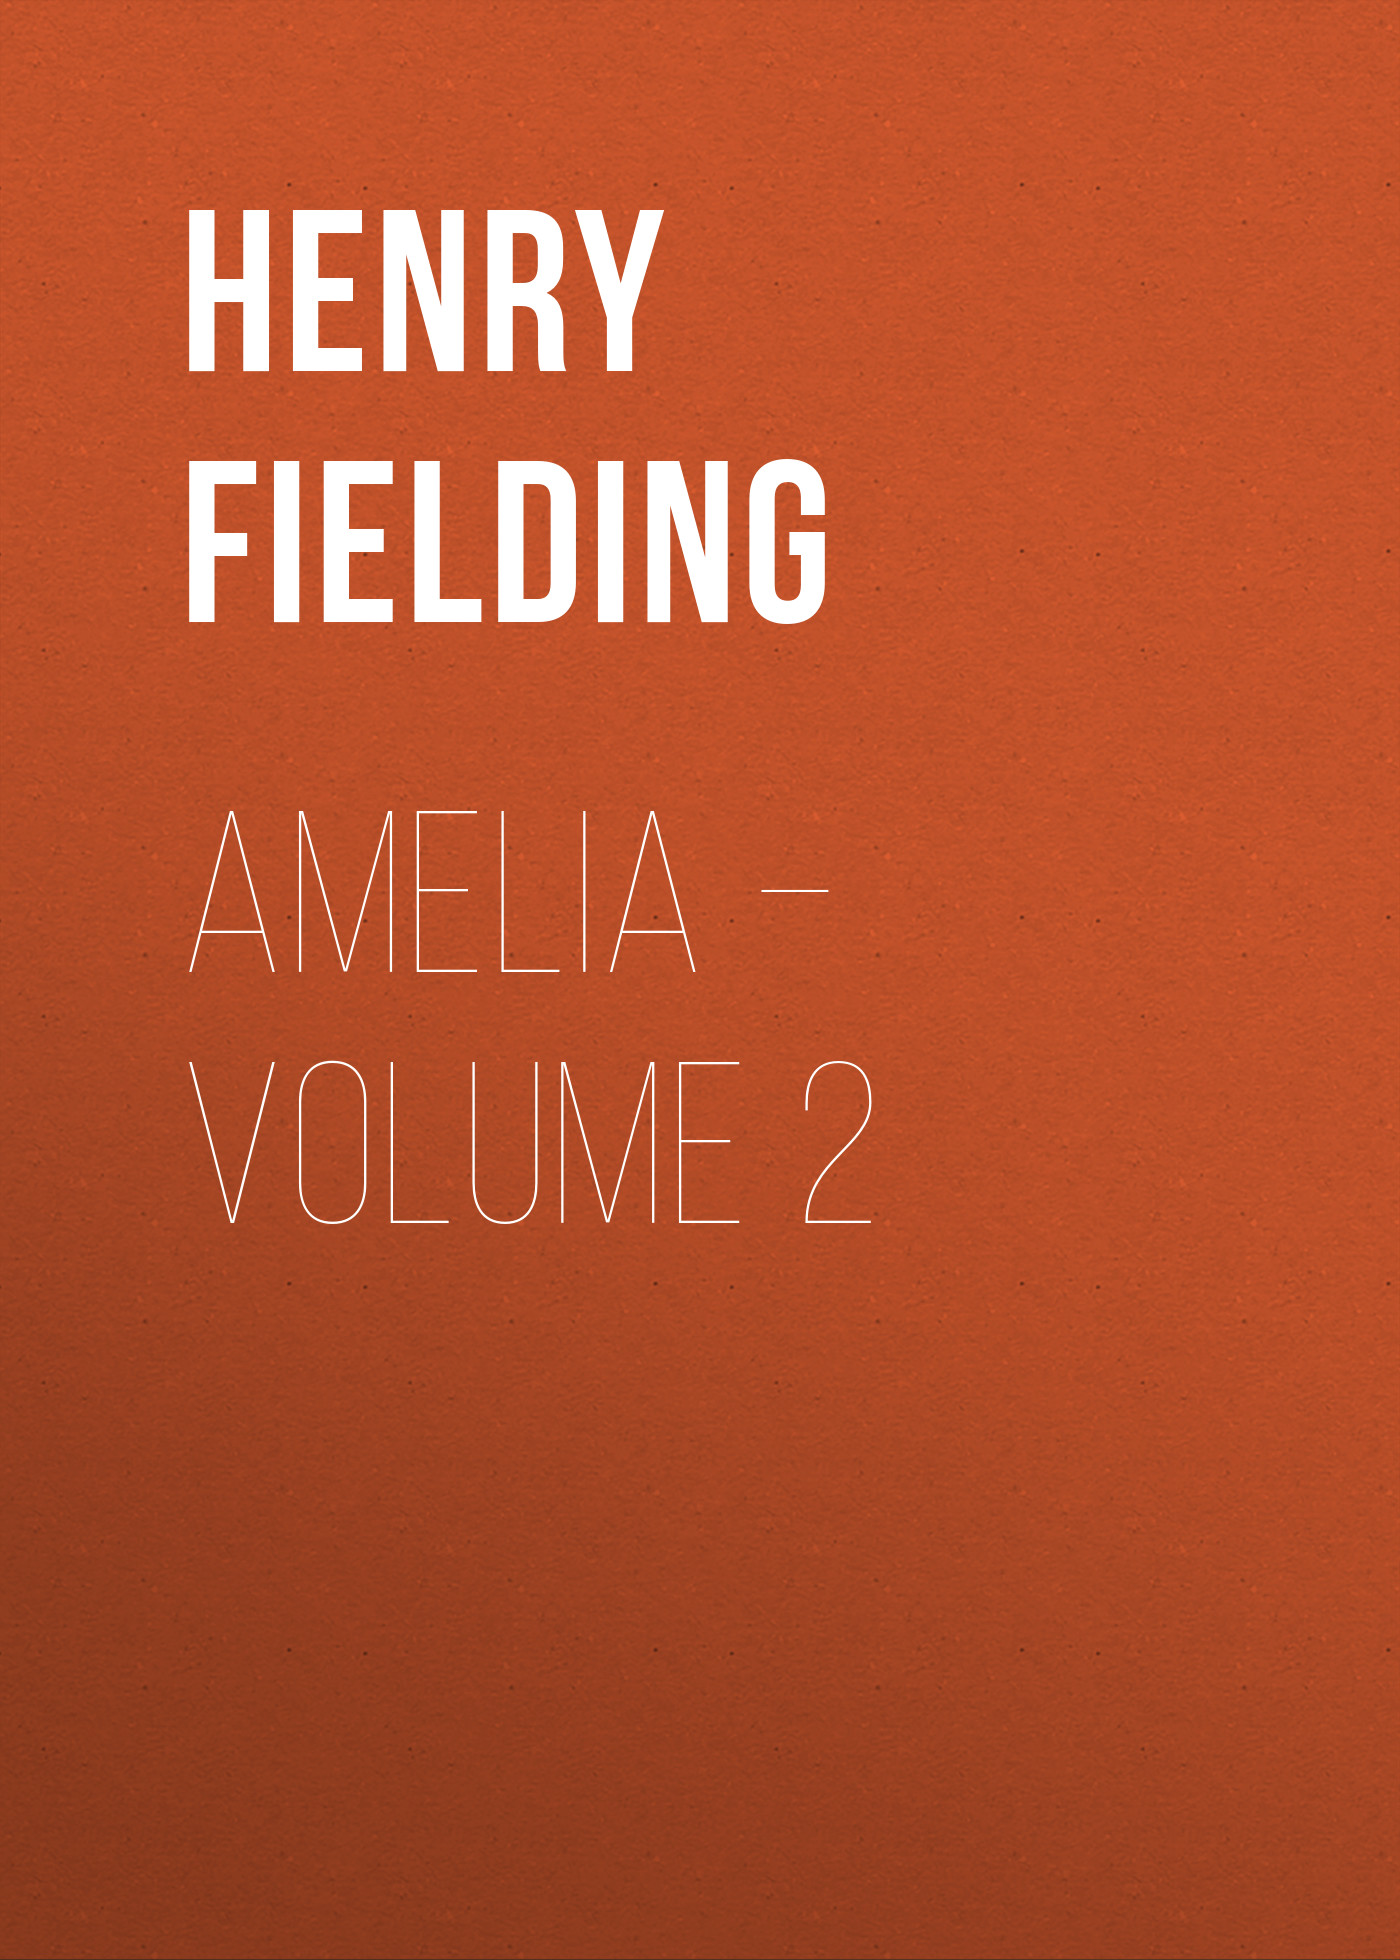 Книга Amelia – Volume 2 из серии , созданная Henry Fielding, может относится к жанру Зарубежная классика, Зарубежная старинная литература. Стоимость электронной книги Amelia – Volume 2 с идентификатором 25203183 составляет 0 руб.